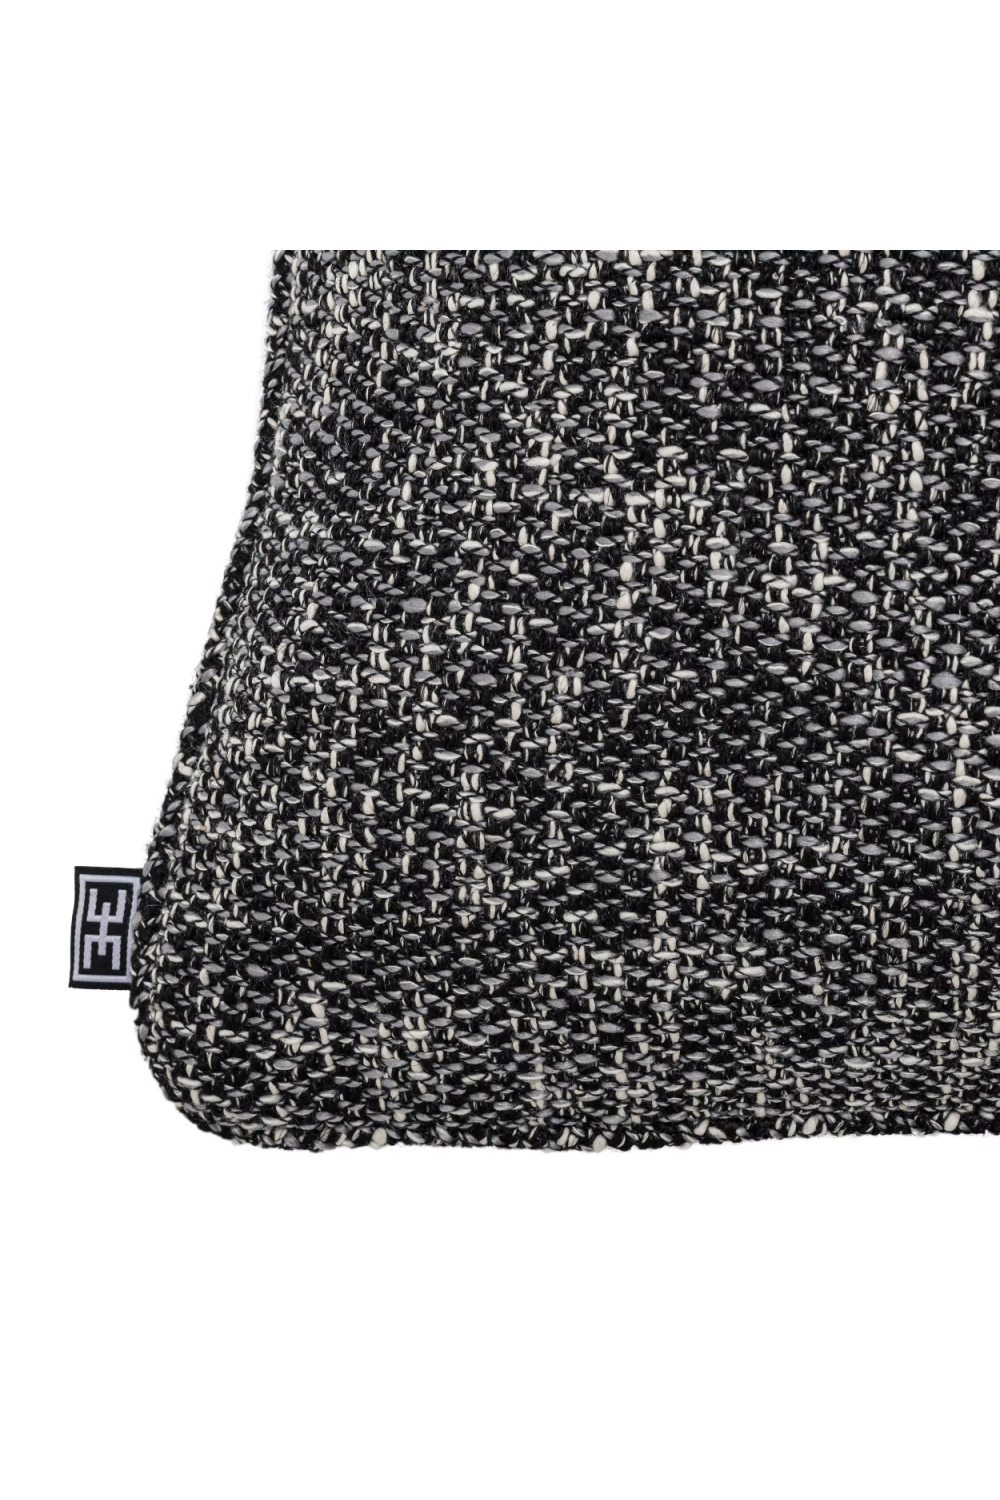 Black Contemporary Lumbar Pillow | Eichholtz Cambon | Oroa.com